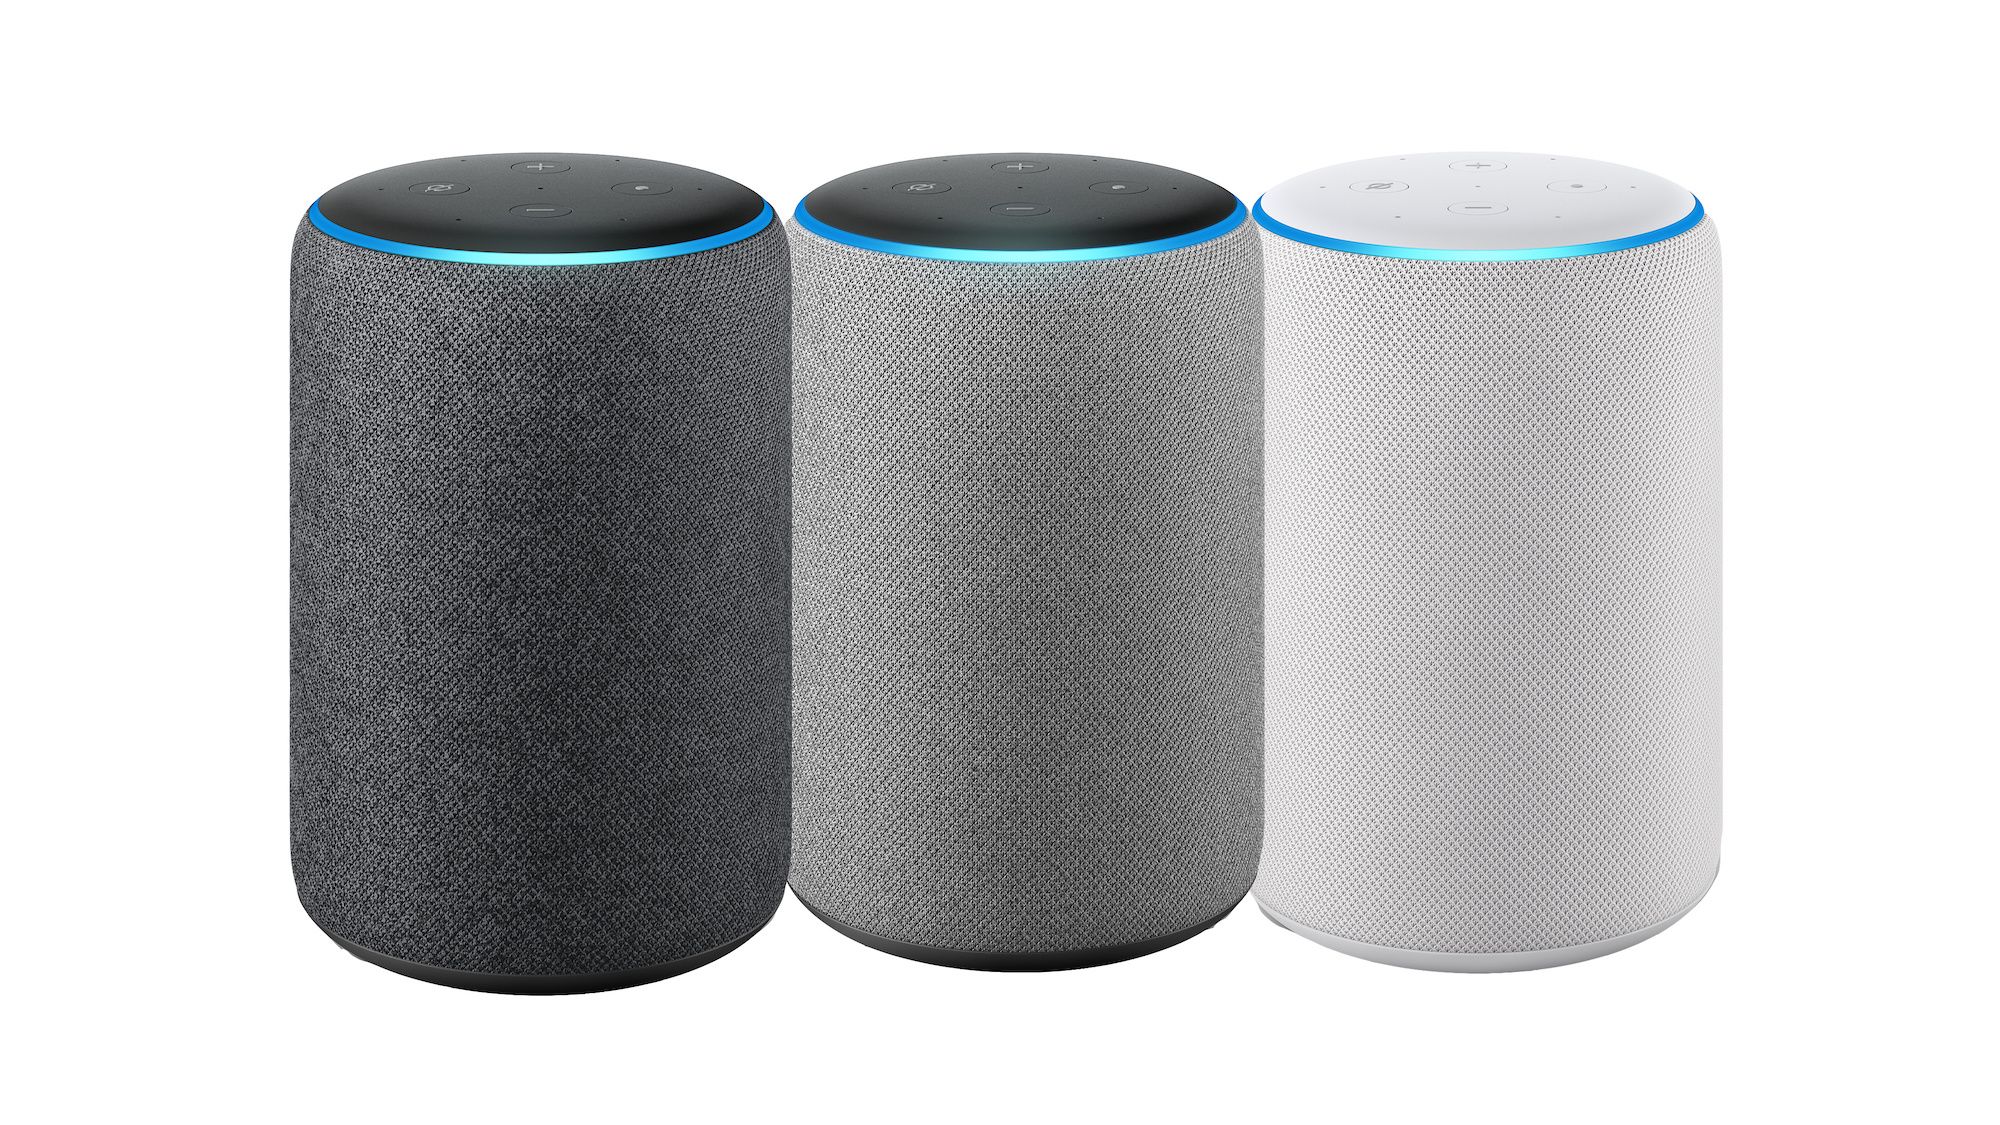 Amazon Echo Plus speakers